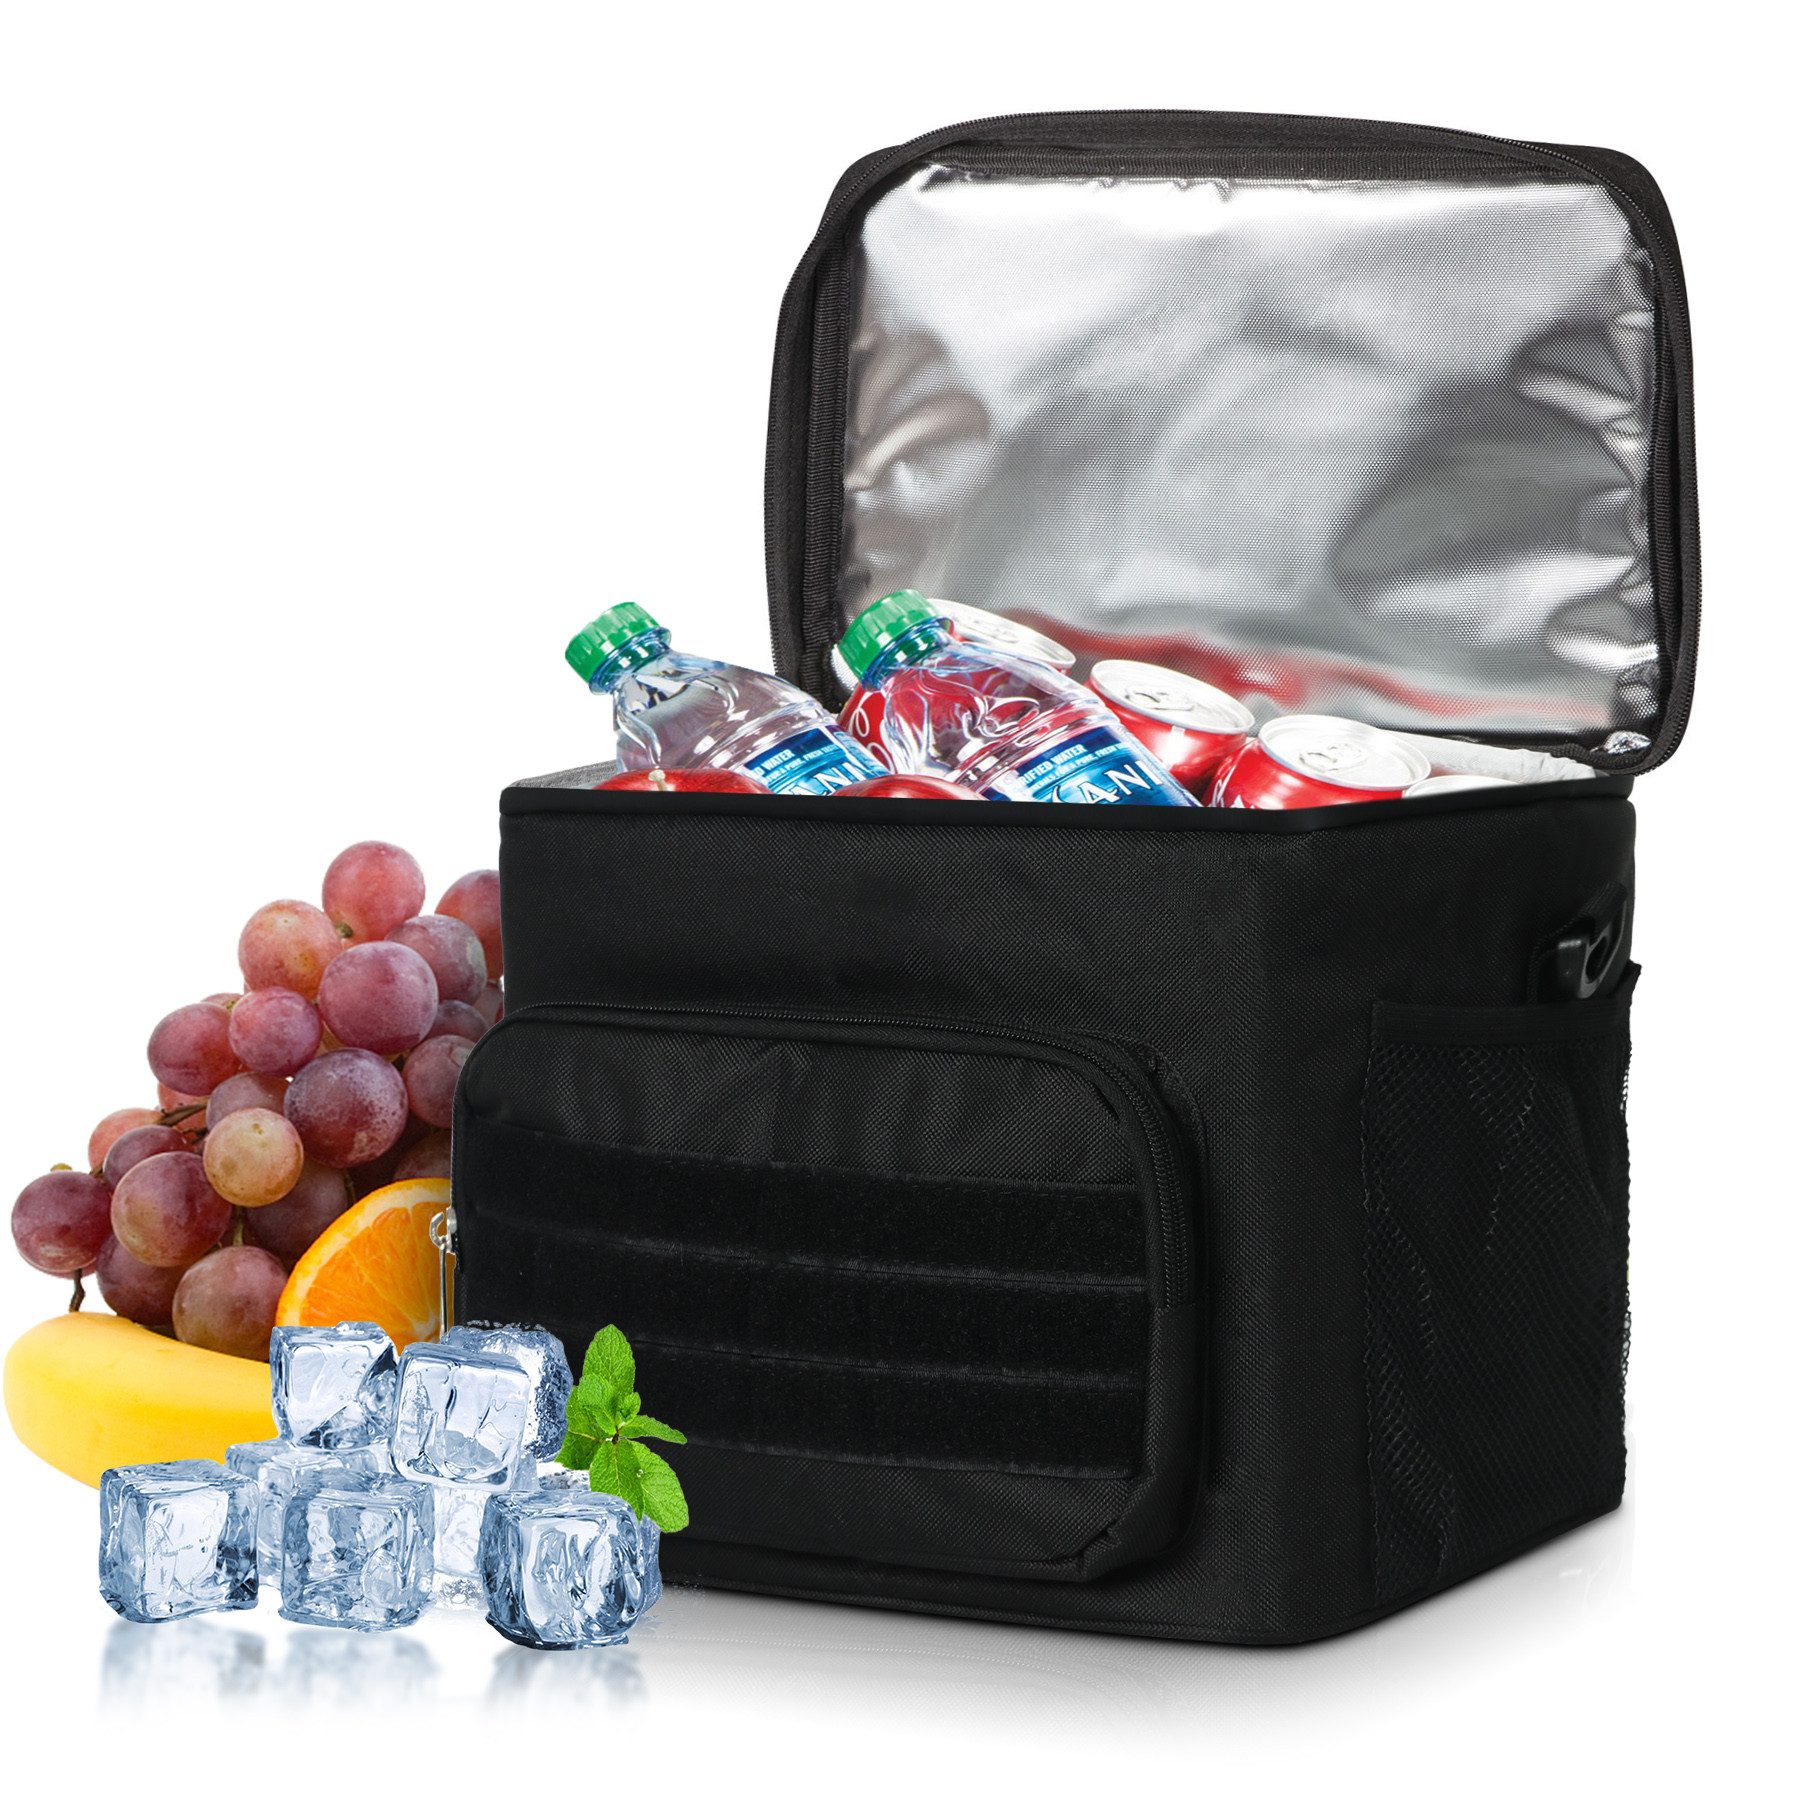 CALIYO Kühltasche Thermotasche Picknicktasche Groß Isoliert Faltbar Gefriertasche, Warmhaltetasche Lunchtasche Tiefkühltasche Cooler Bag Einkaufstasche